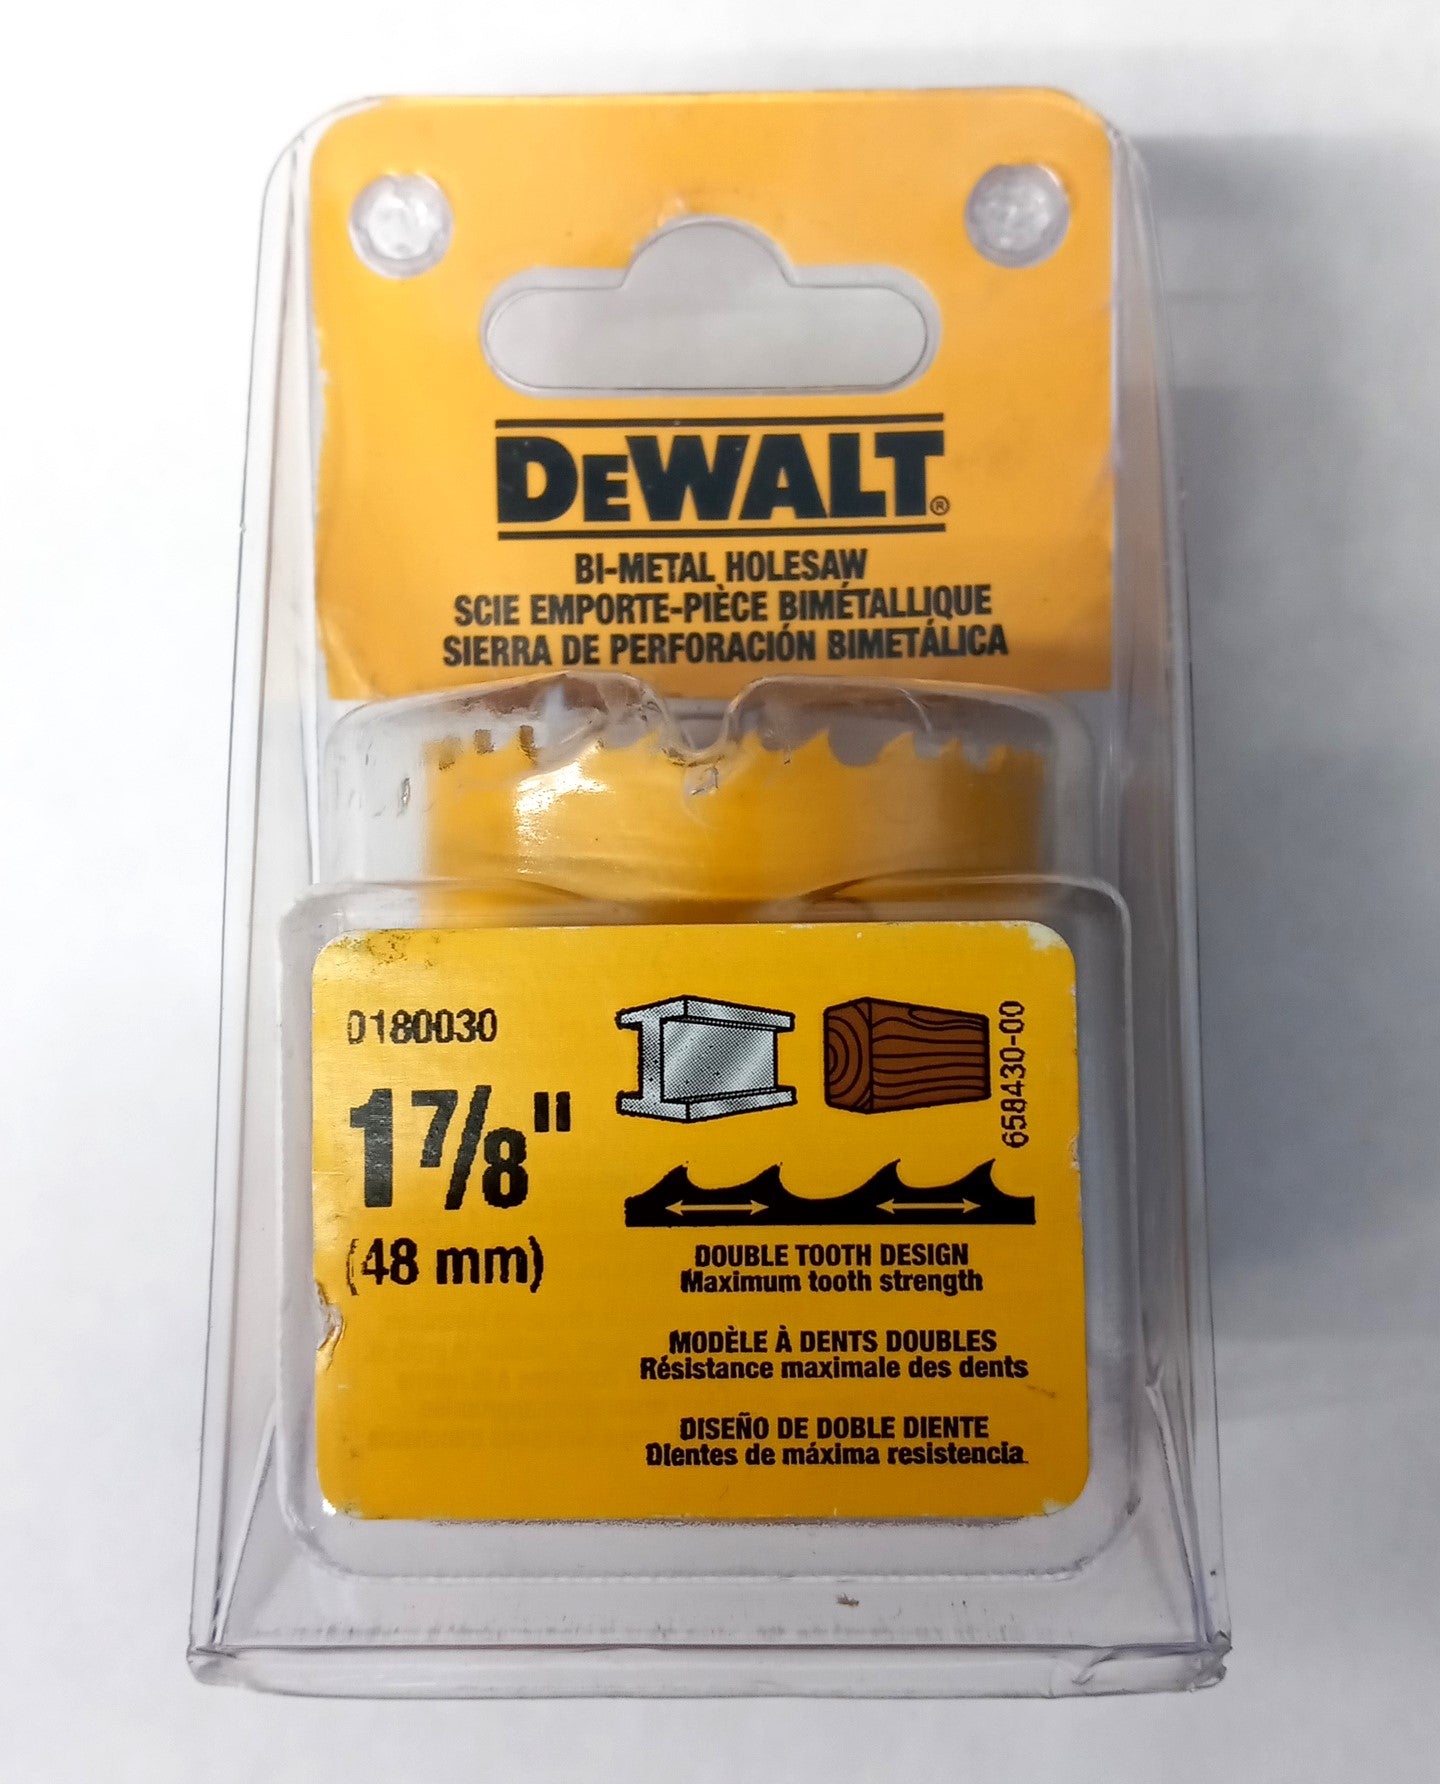 DeWalt D180030 1-7/8" (48mm) Bi-Metal Hole saw USA